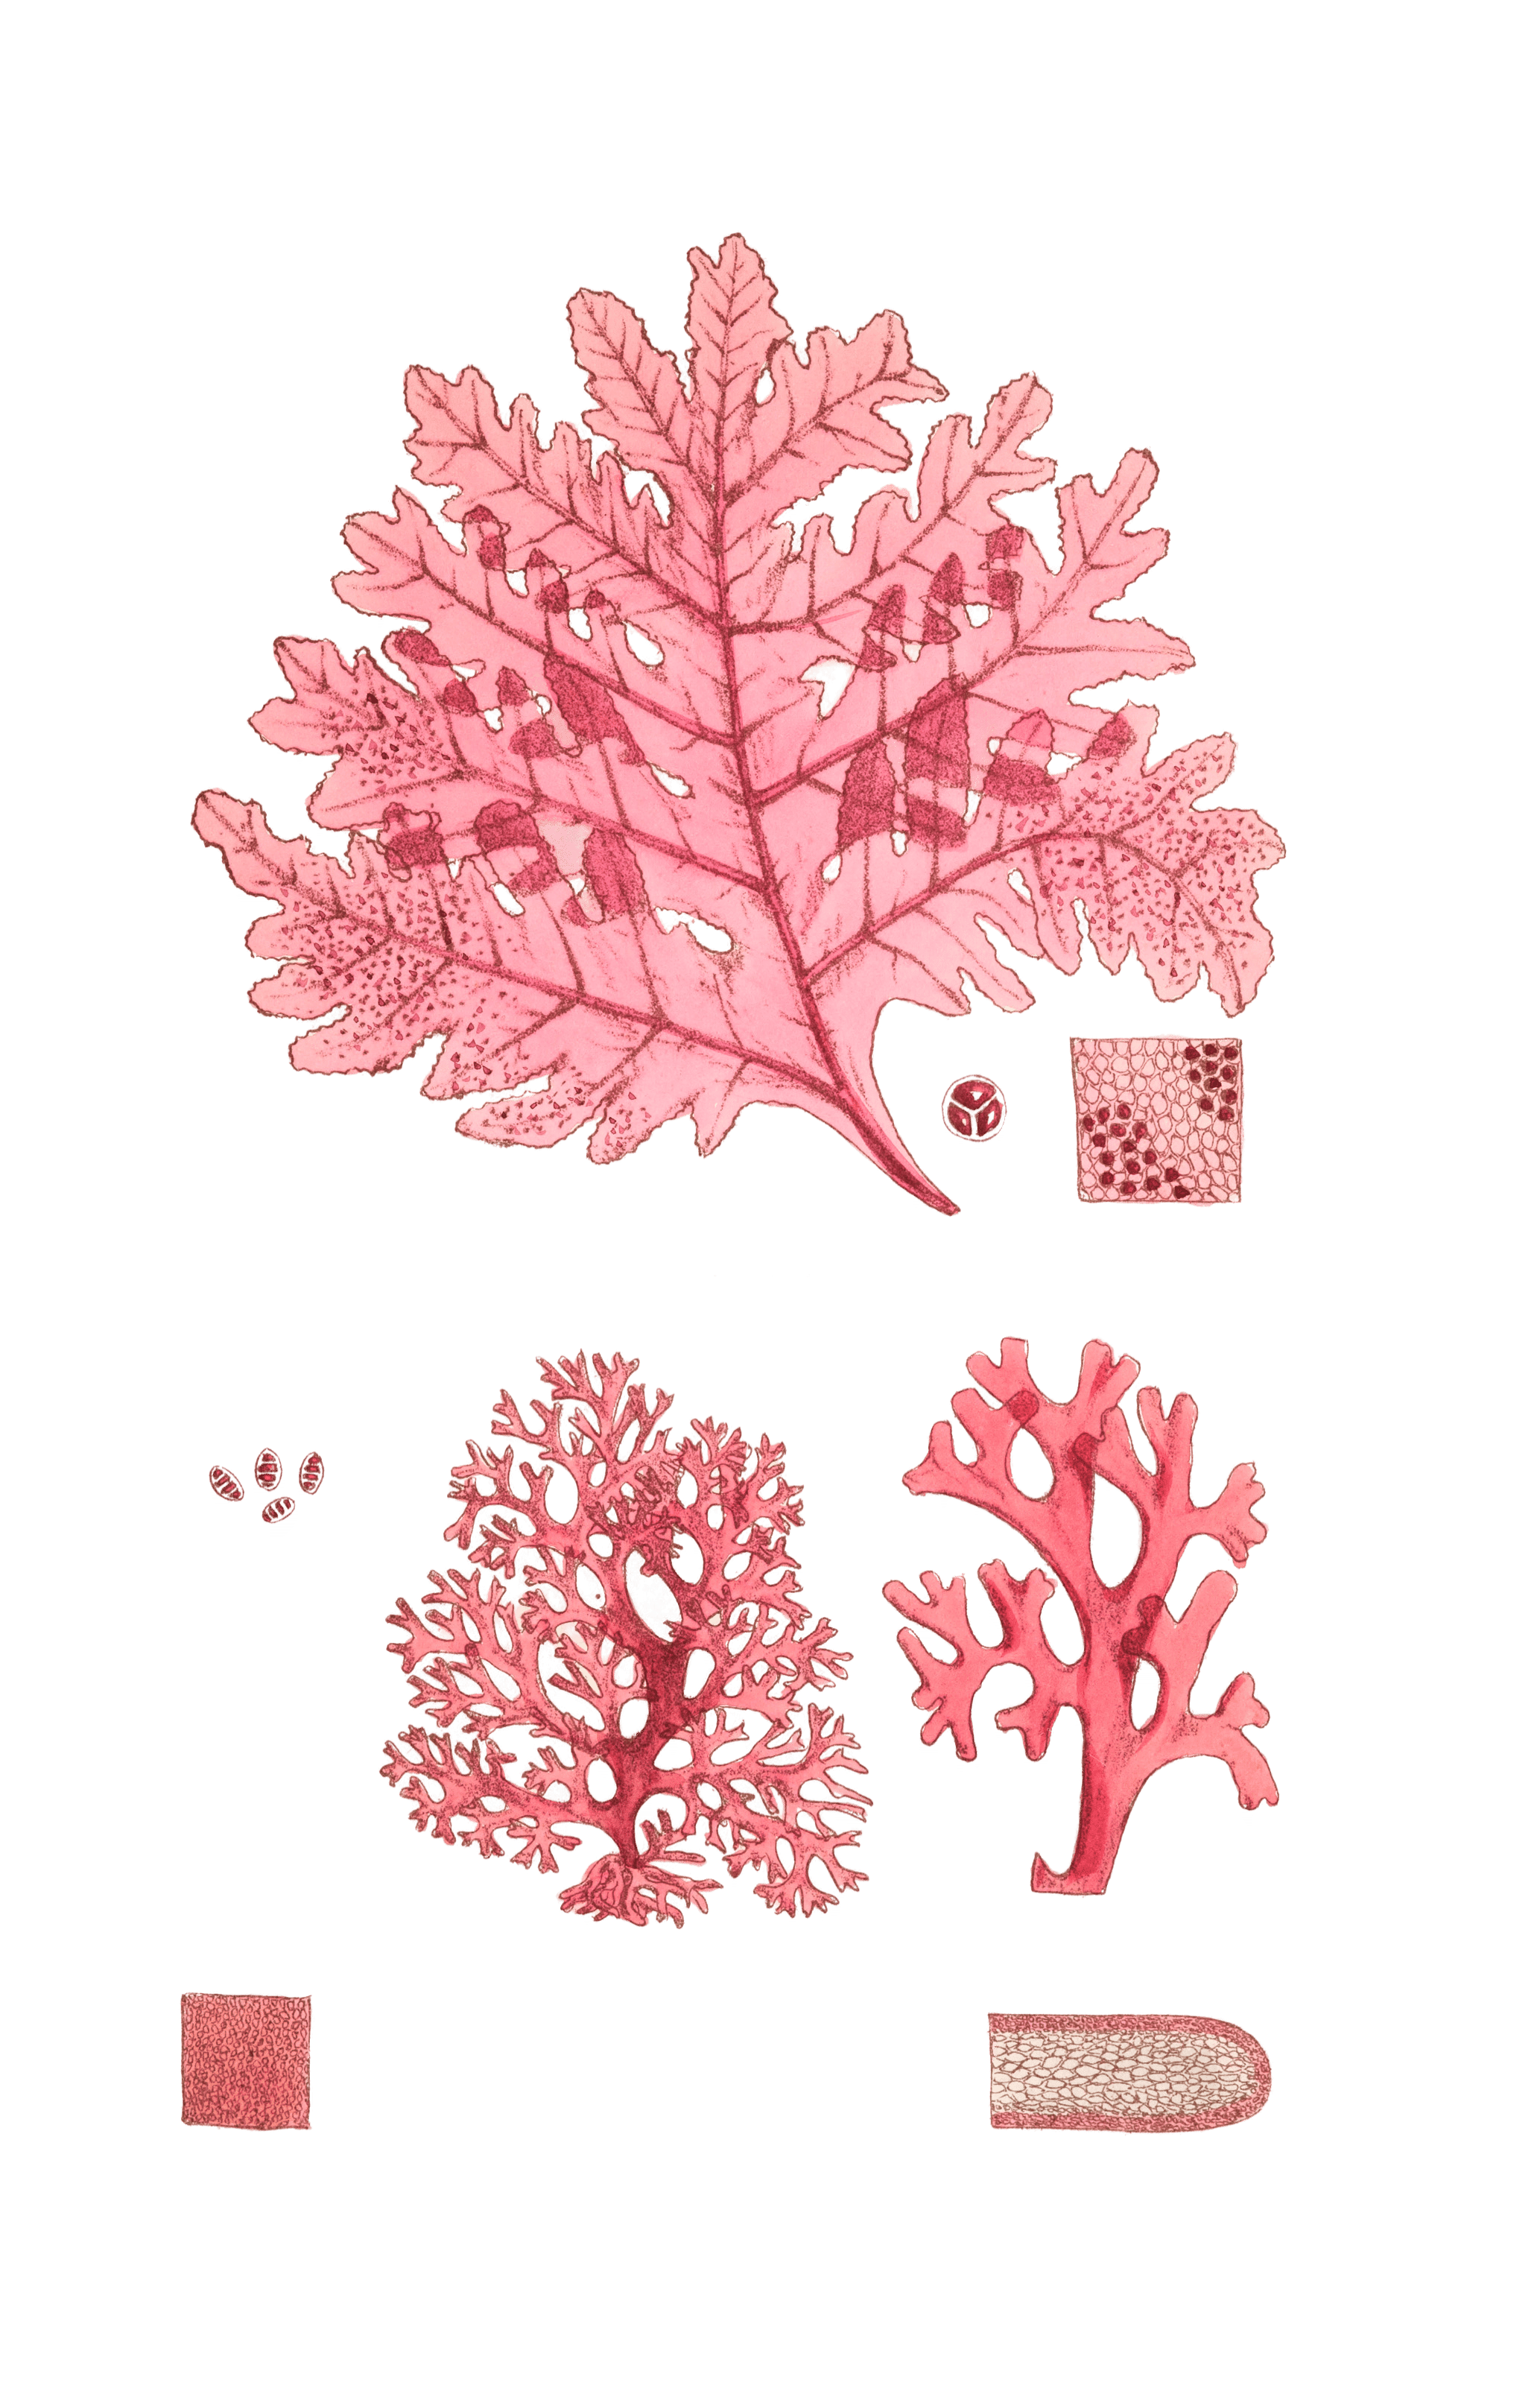 Algae-Seaweed-of-the-southern-ocean-329-copy